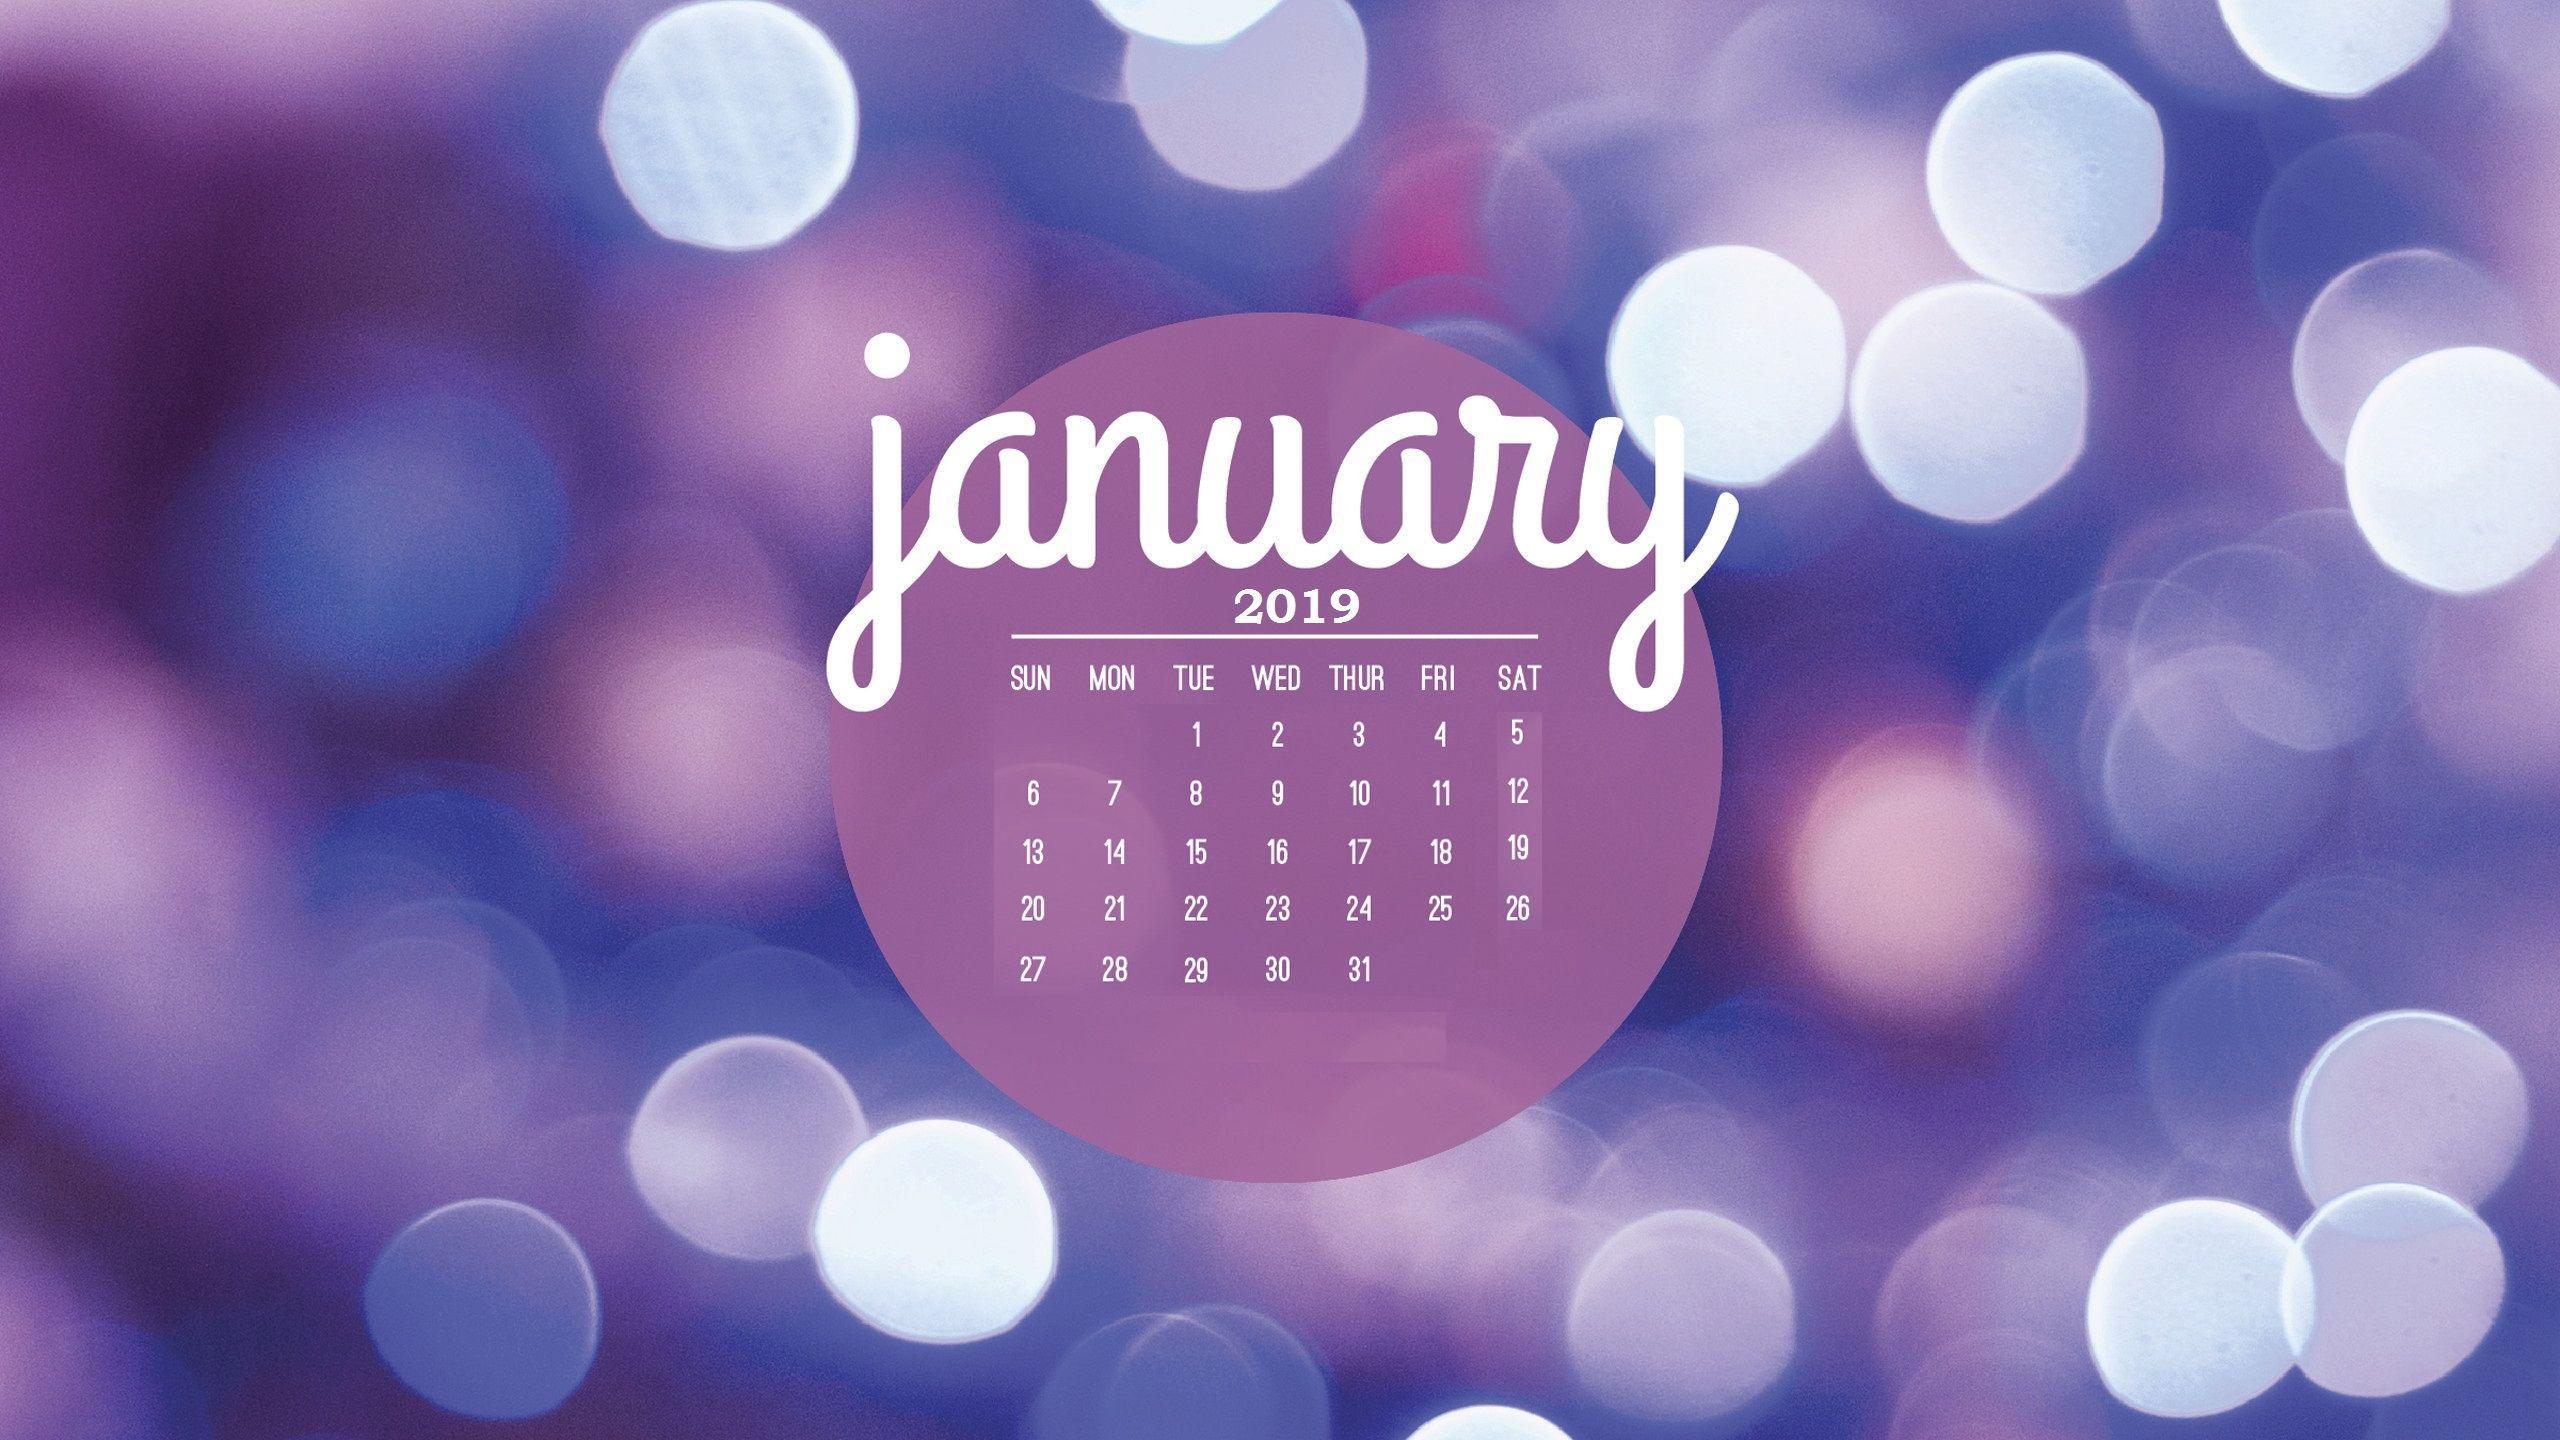 january 2019 HD calendar wallpaper calendar 2019january 2019